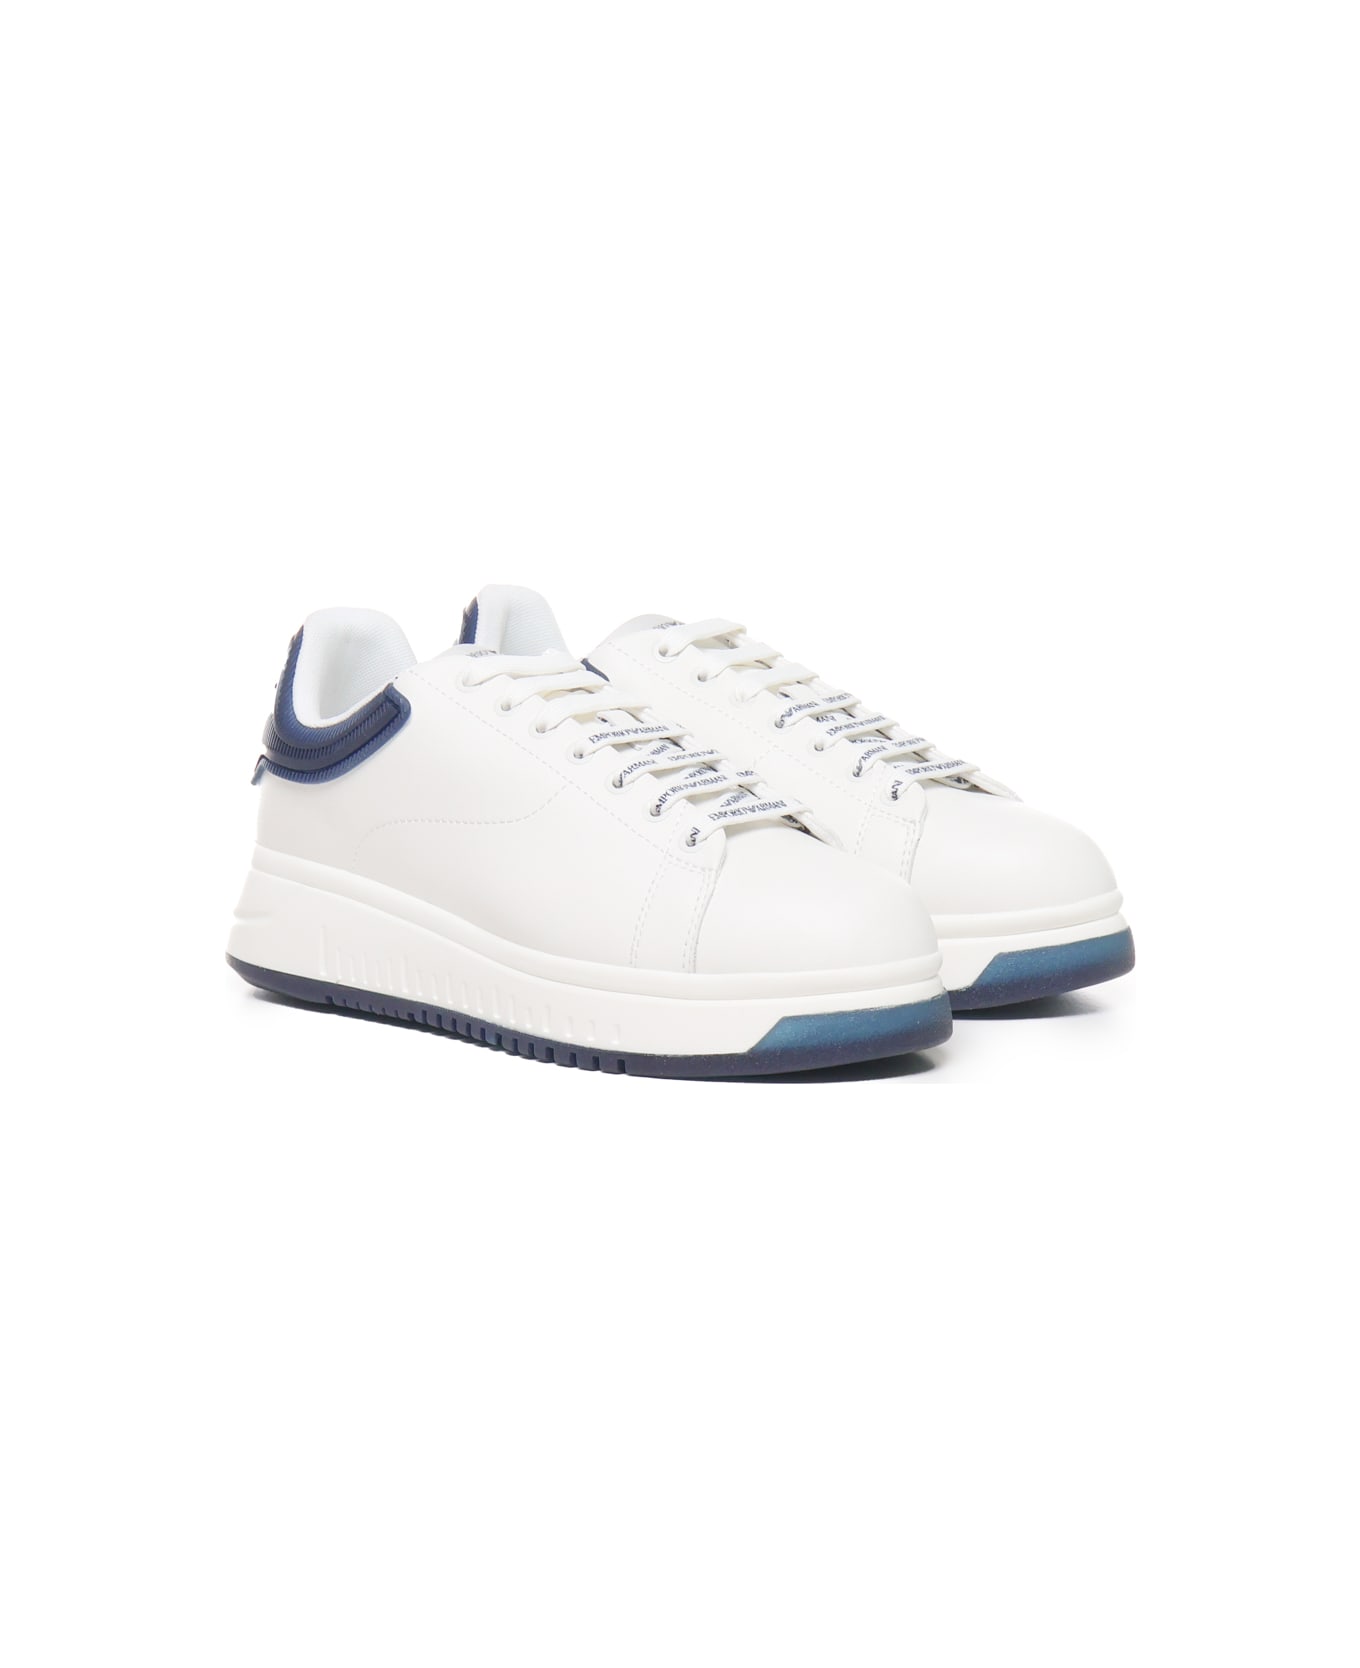 Giorgio Armani Sneakers With Contrasting Rivet Giorgio Armani - White, blue スニーカー